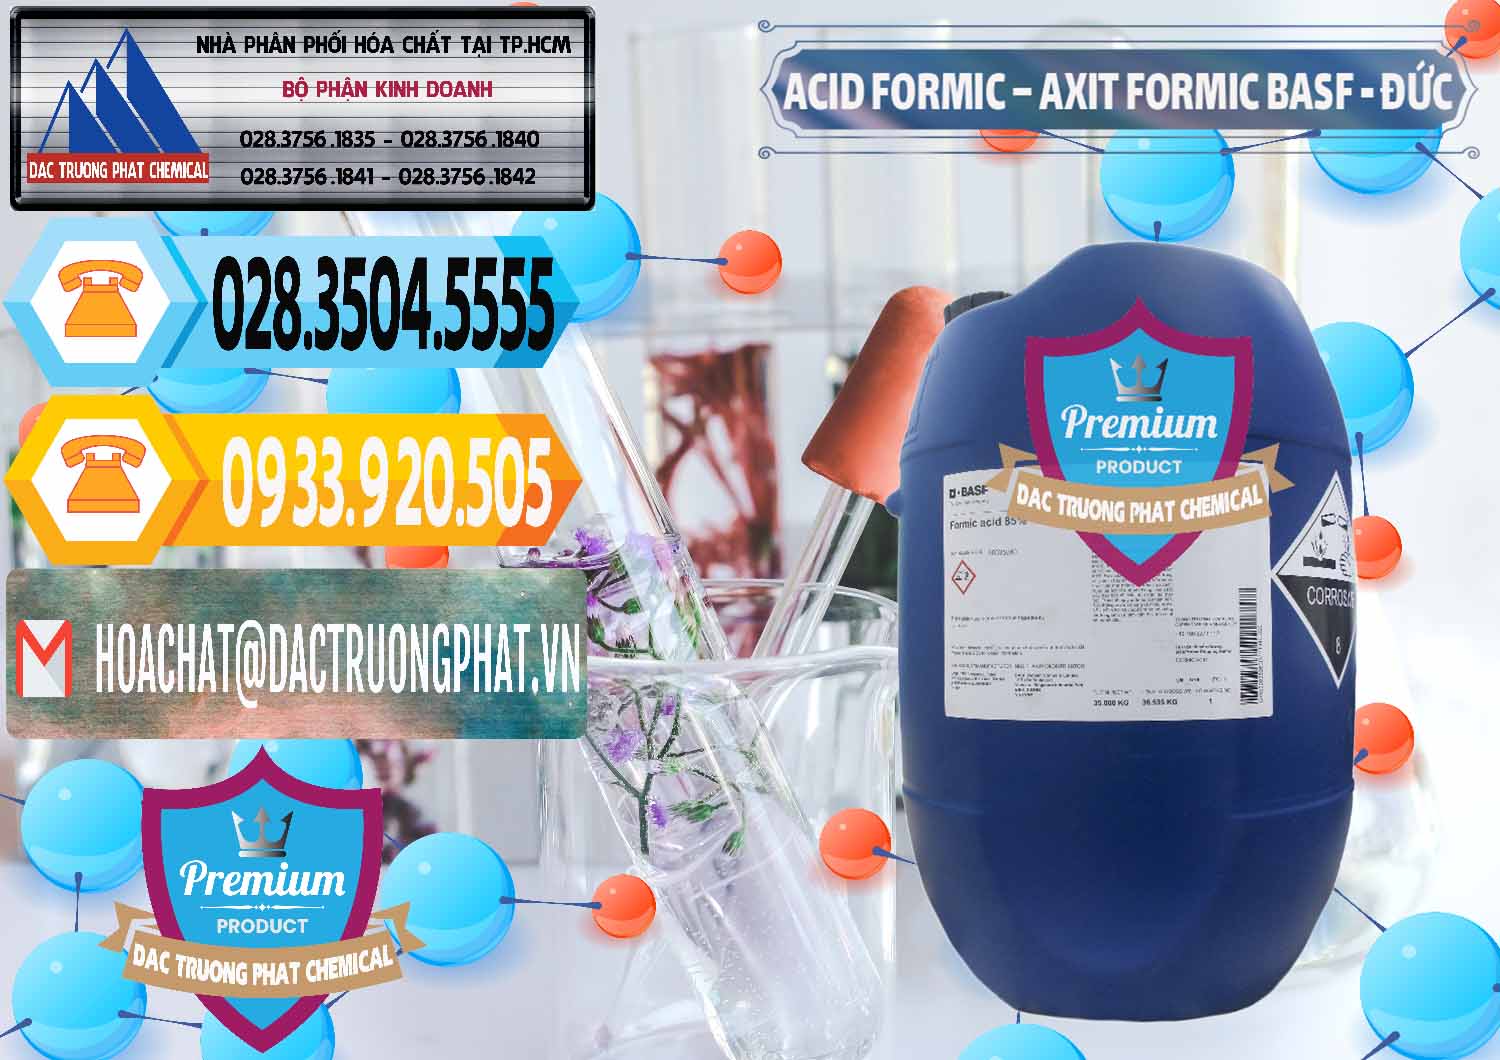 Nơi chuyên bán ( cung cấp ) Acid Formic - Axit Formic BASF Đức Germany - 0028 - Đơn vị chuyên phân phối & bán hóa chất tại TP.HCM - hoachattayrua.net